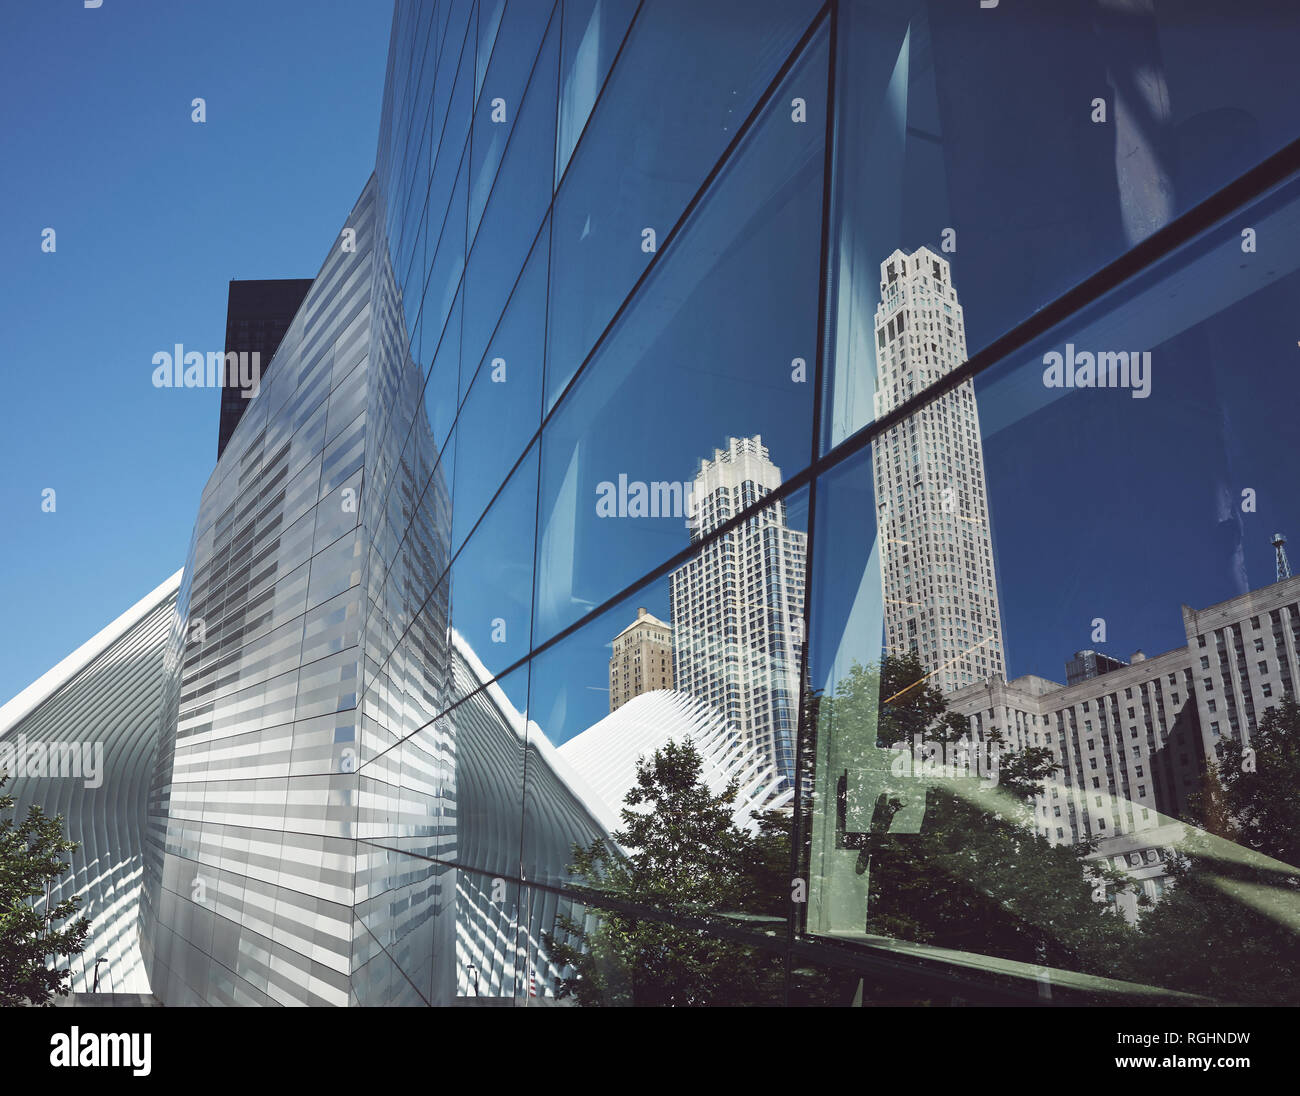 La Ciudad de Nueva York refleja la arquitectura moderna y antigua de cristal coloreado, EE.UU. aplicada. Foto de stock